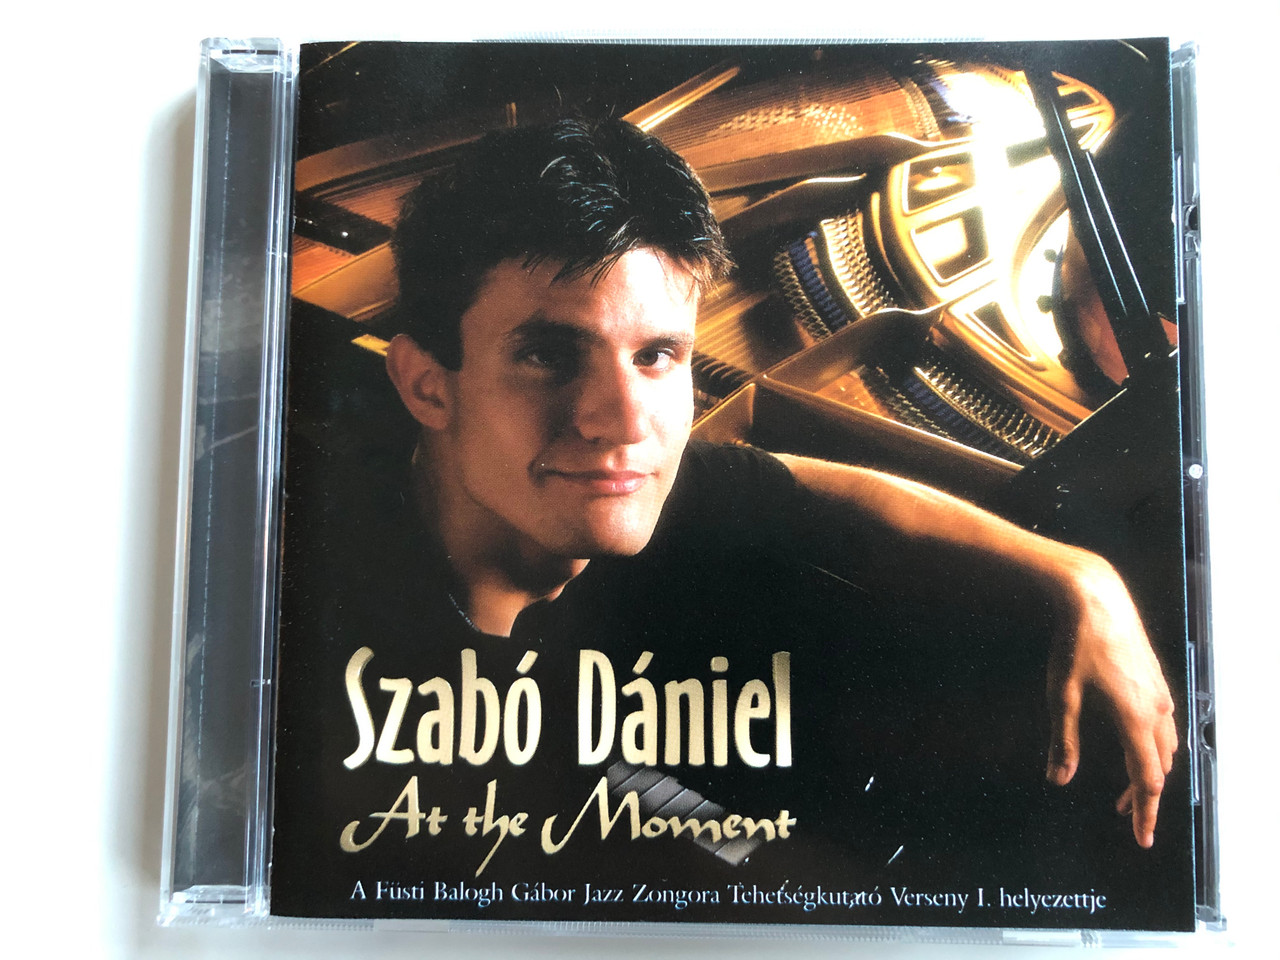 Szabó Dániel ‎– At The Moment / A Fusti Balogh Gabor Jazz Zongora  Tehetsegkutato Verseny I. helyezettje / Magneoton ‎Audio CD 1998 /  3984-25119-2 - bibleinmylanguage